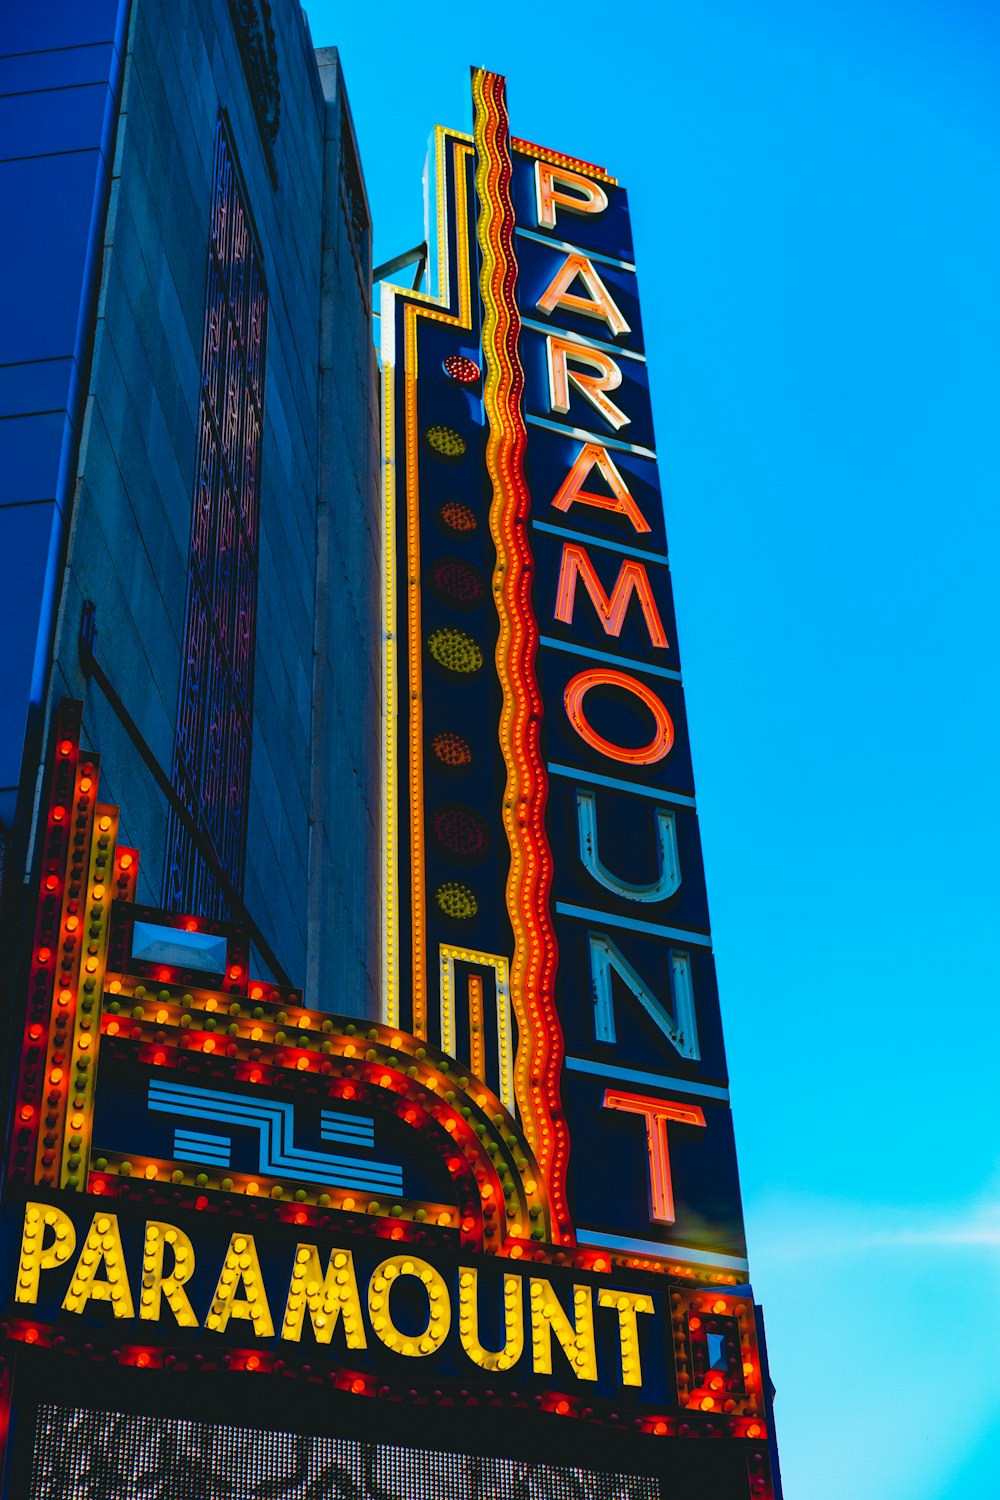 foto dell'insegna Paramount sotto il cielo azzurro